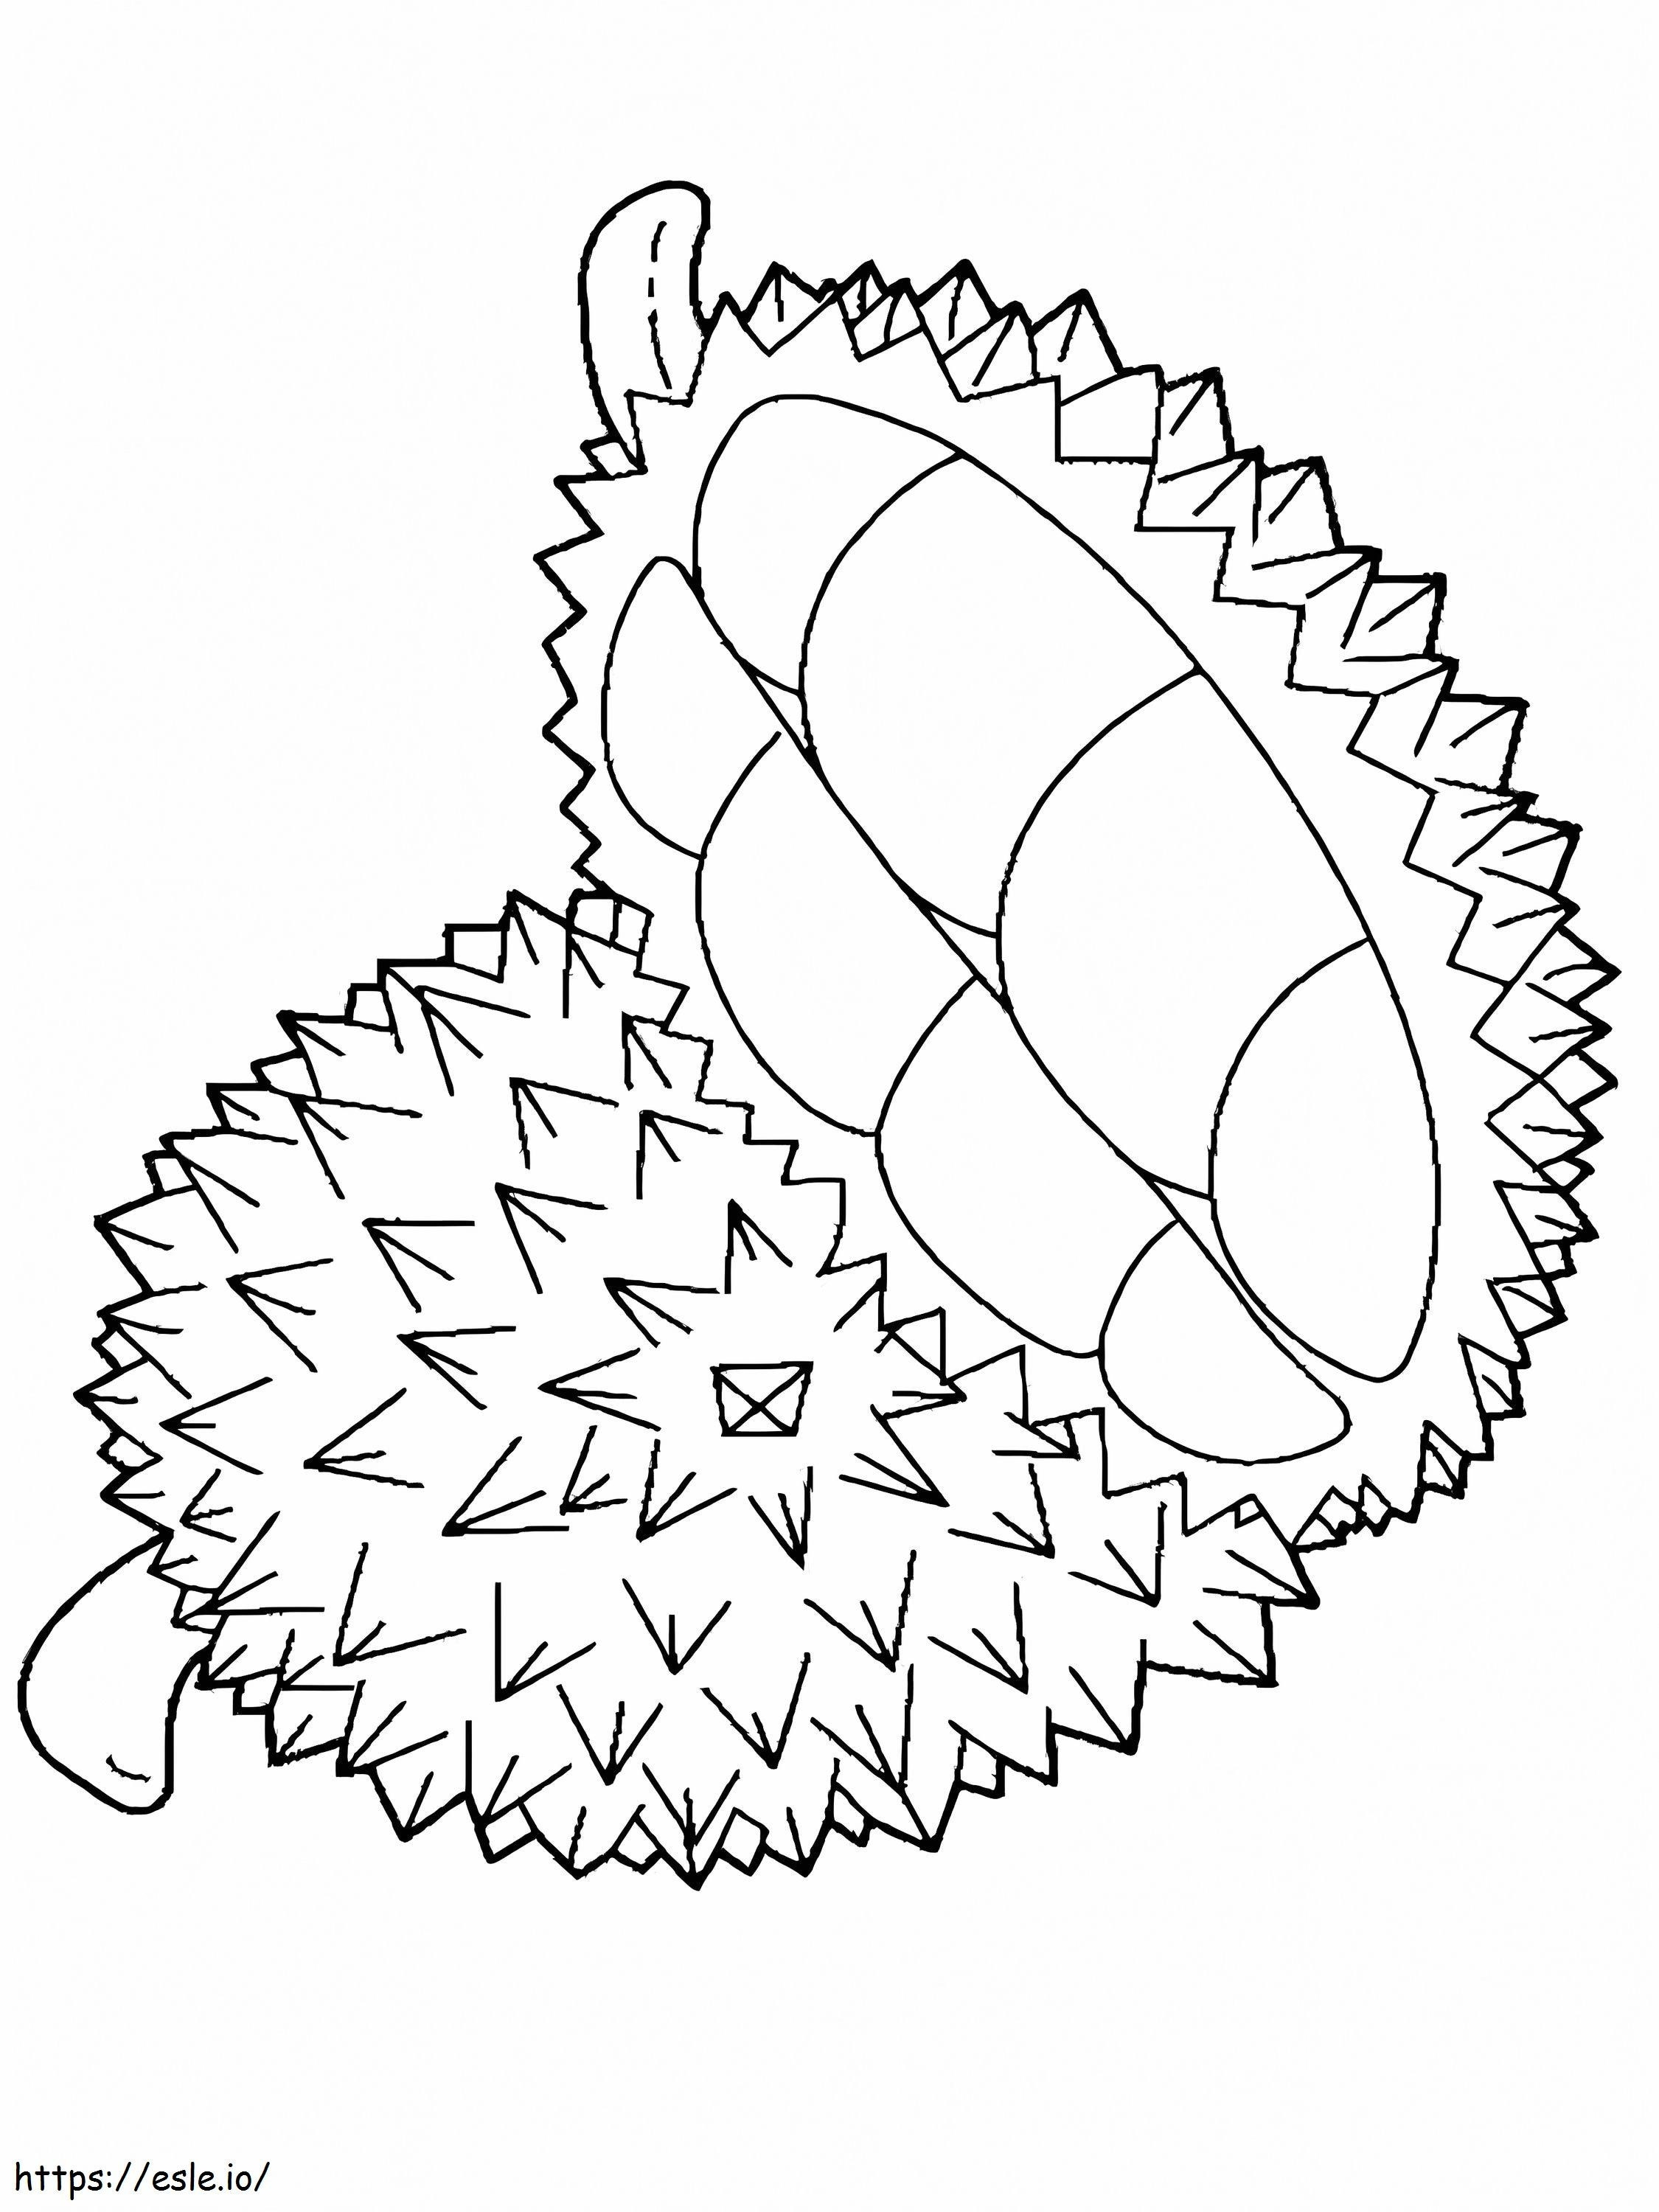 Wunderschöner Durian ausmalbilder